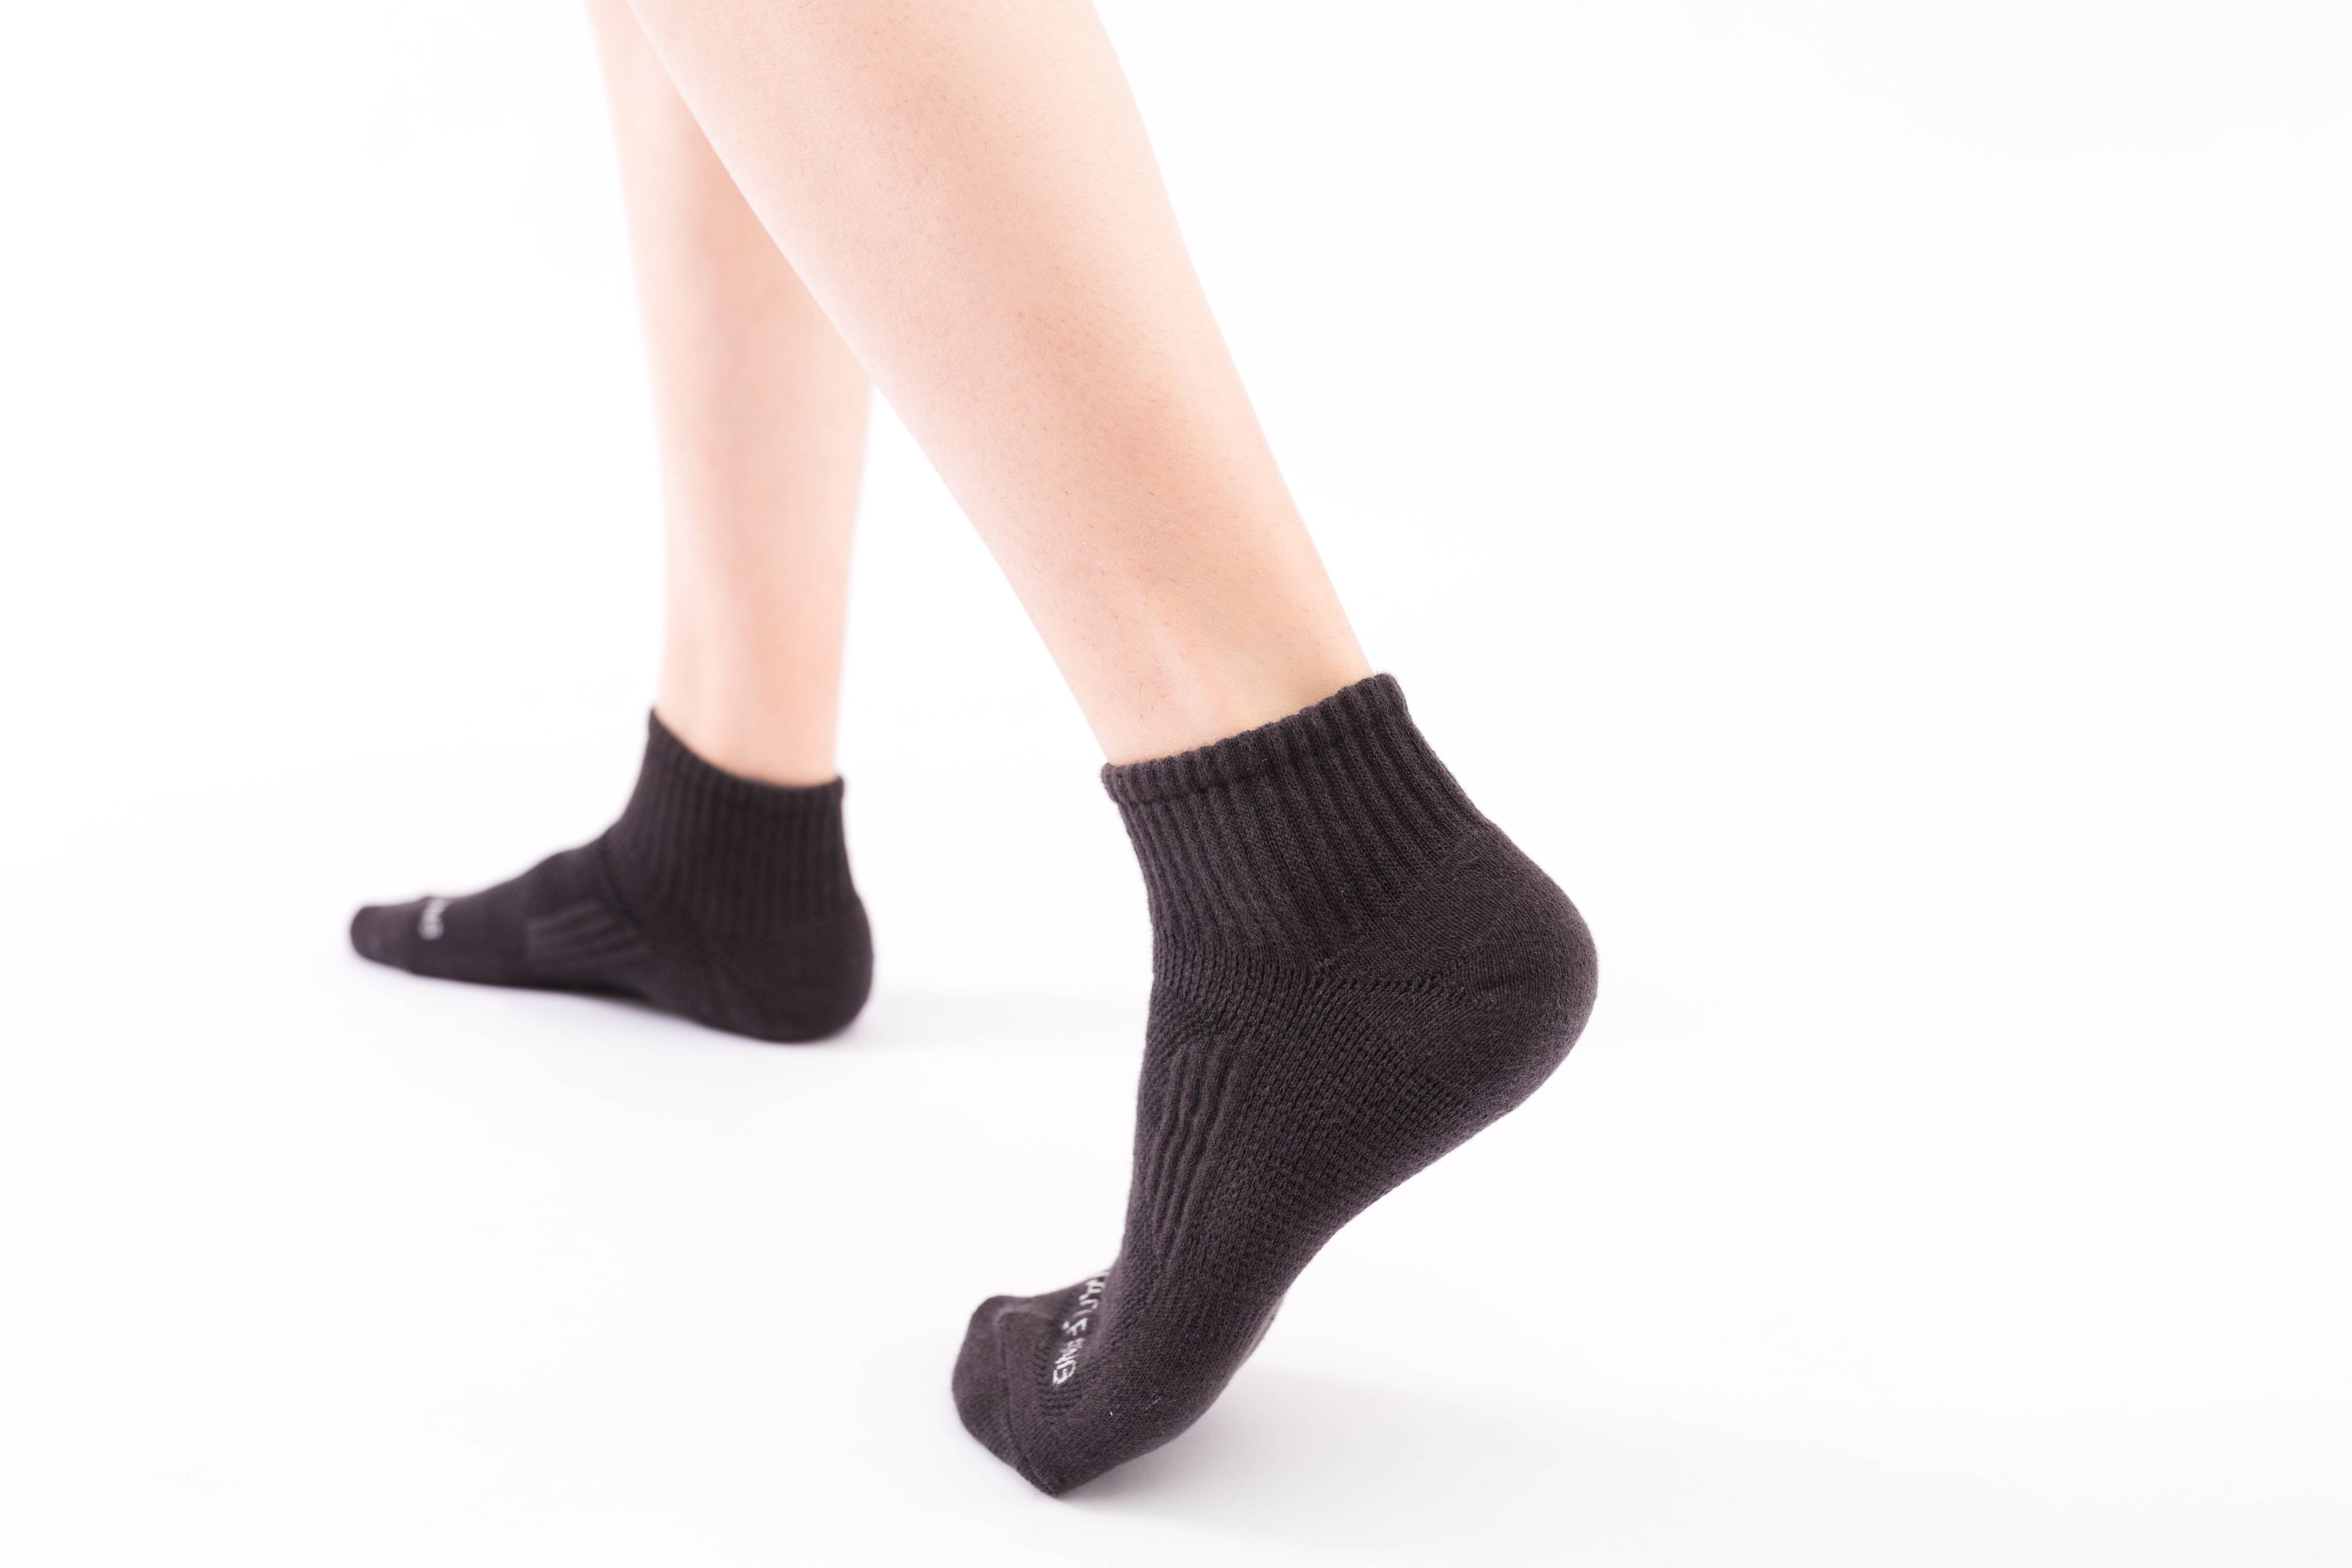 單色減壓高船型機能襪-黑色 W023